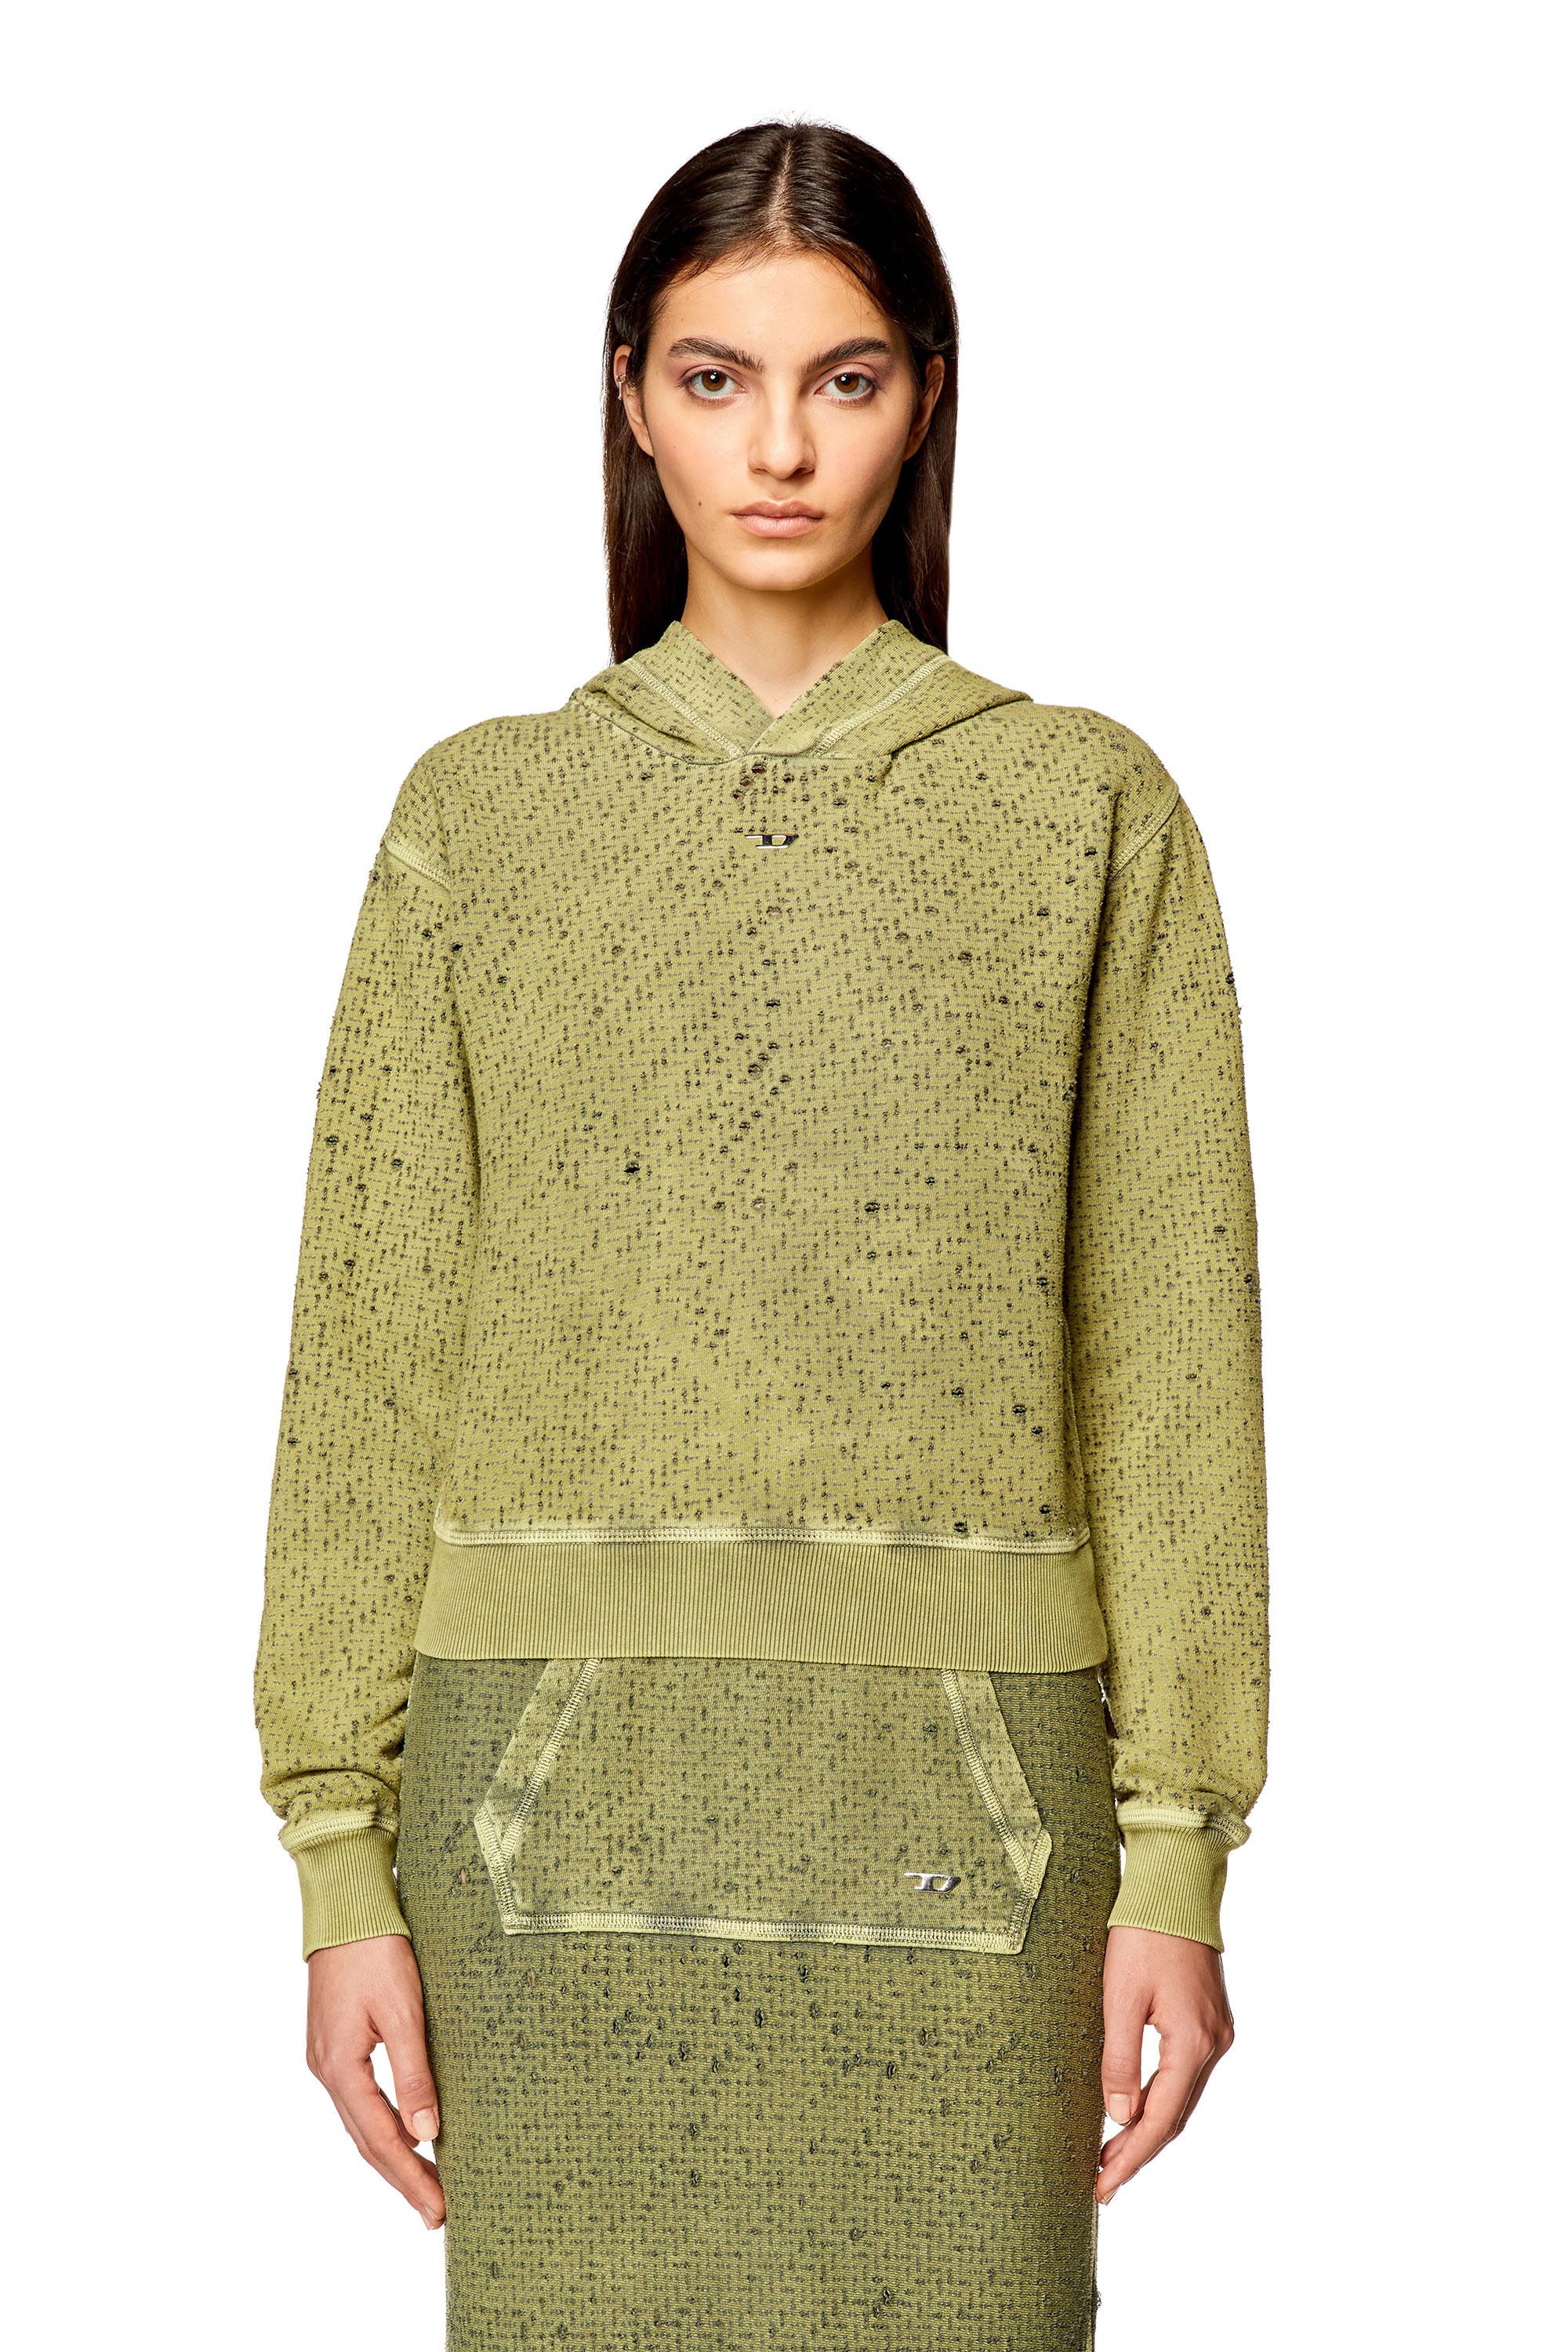 Diesel - Sweat-shirt à capuche en jersey découpé au laser - Pull Cotton - Femme - Vert